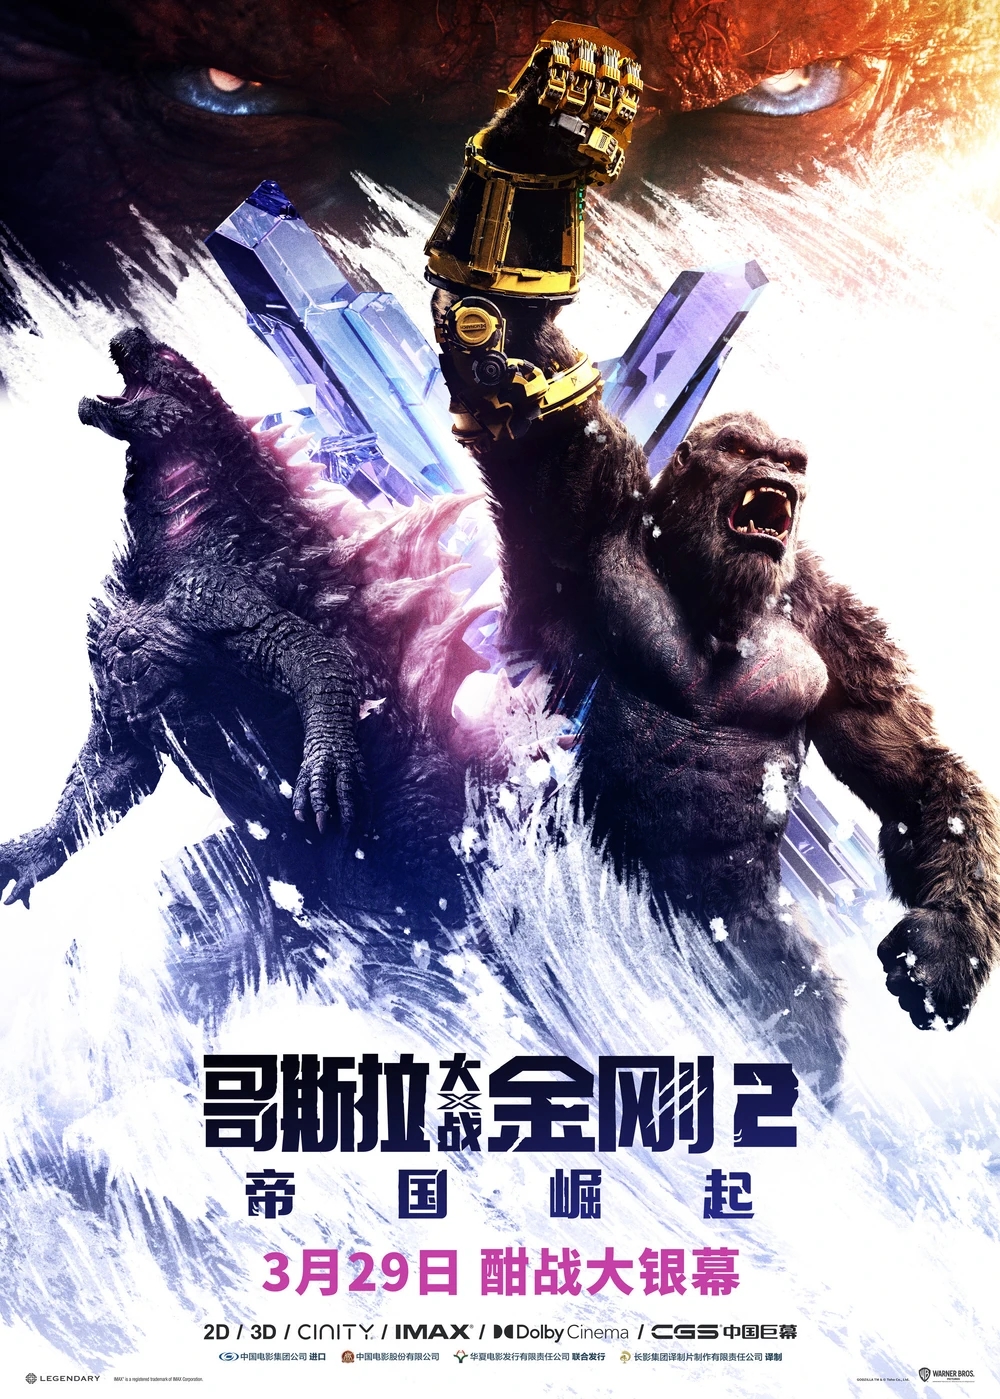 Kong feat. Godzilla